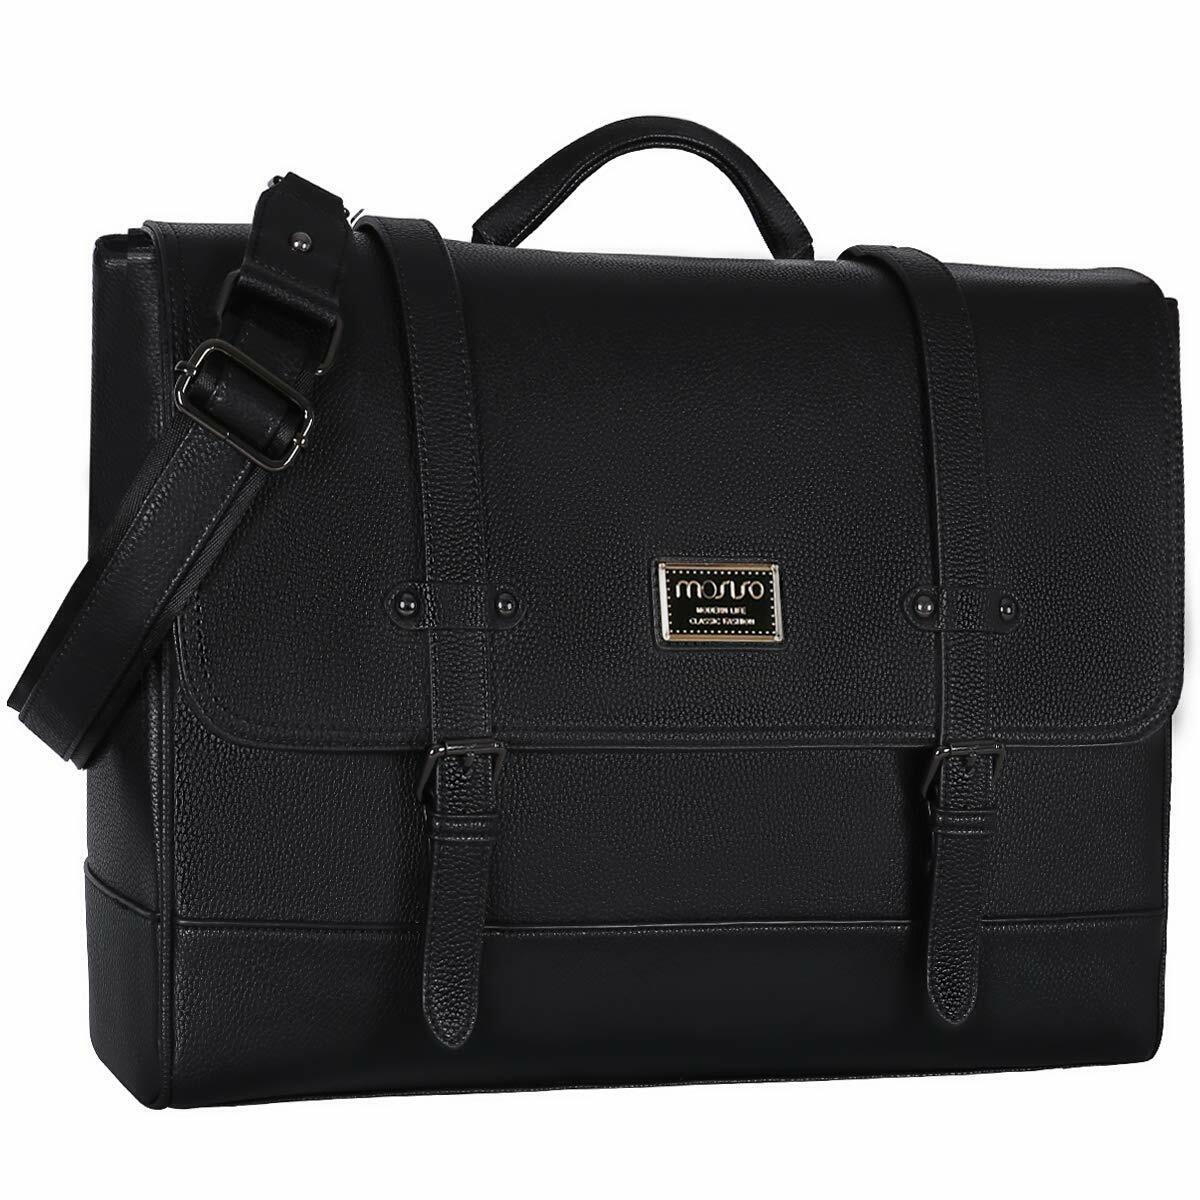 15.6 inch Laptop Messenger Shoulder Bag for Women Men Water Resistant Briefcase